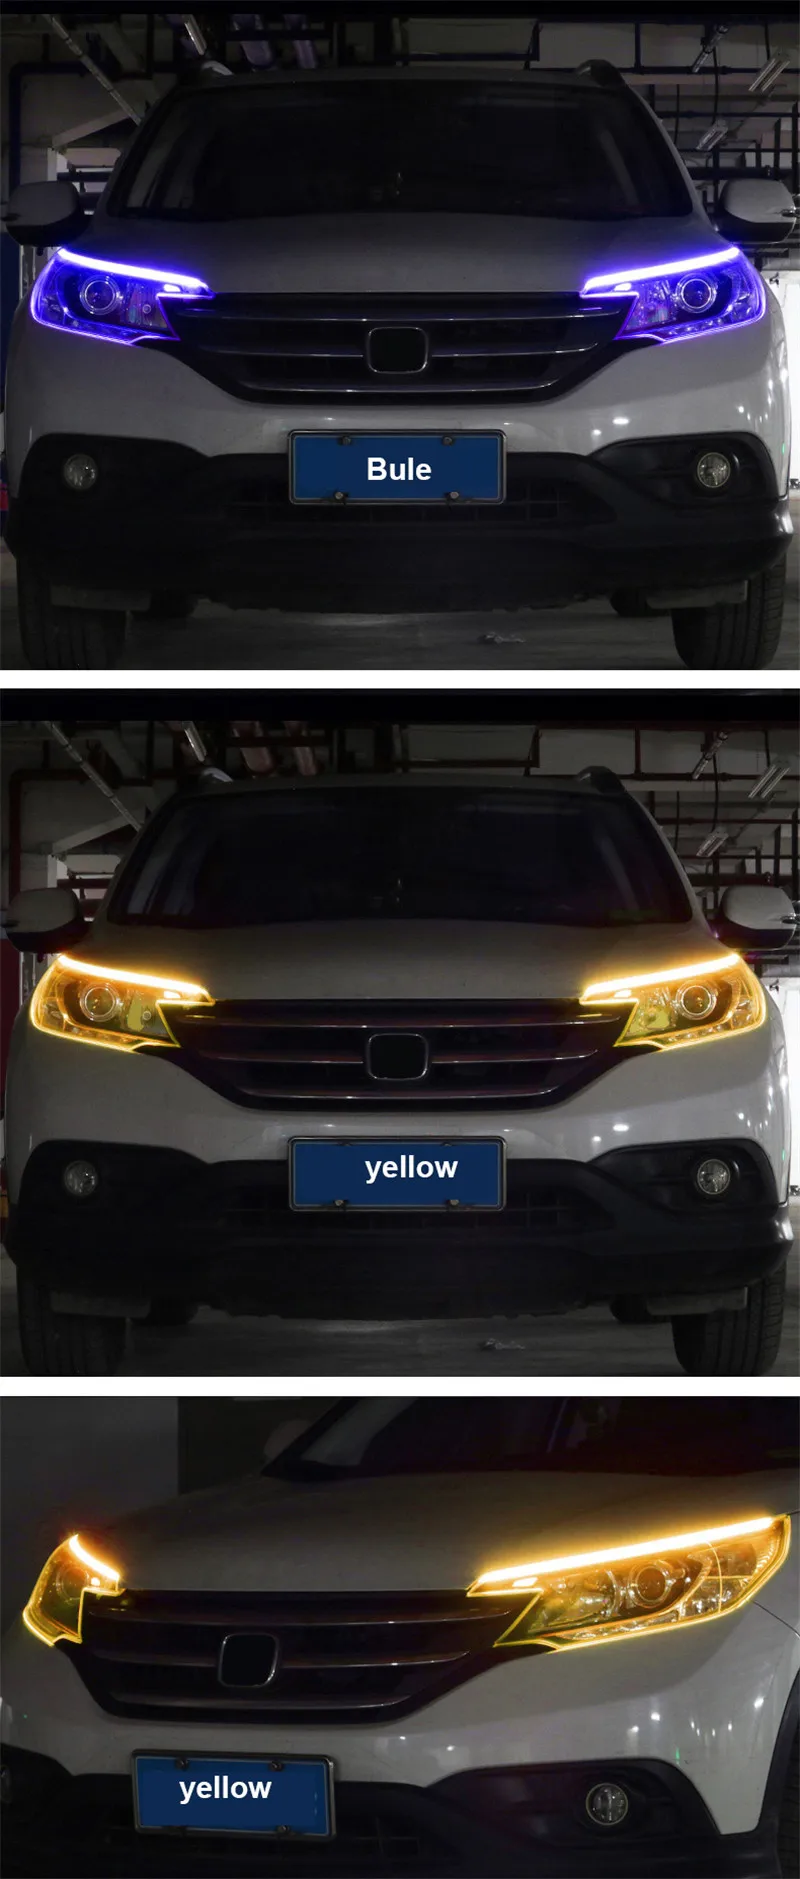 YHKOMS 1 шт. автомобильные лампы для автомобилей DRL светодиодный дневные ходовые огни указатель поворота желтая направляющая полоса для фар в сборе DRL лампа